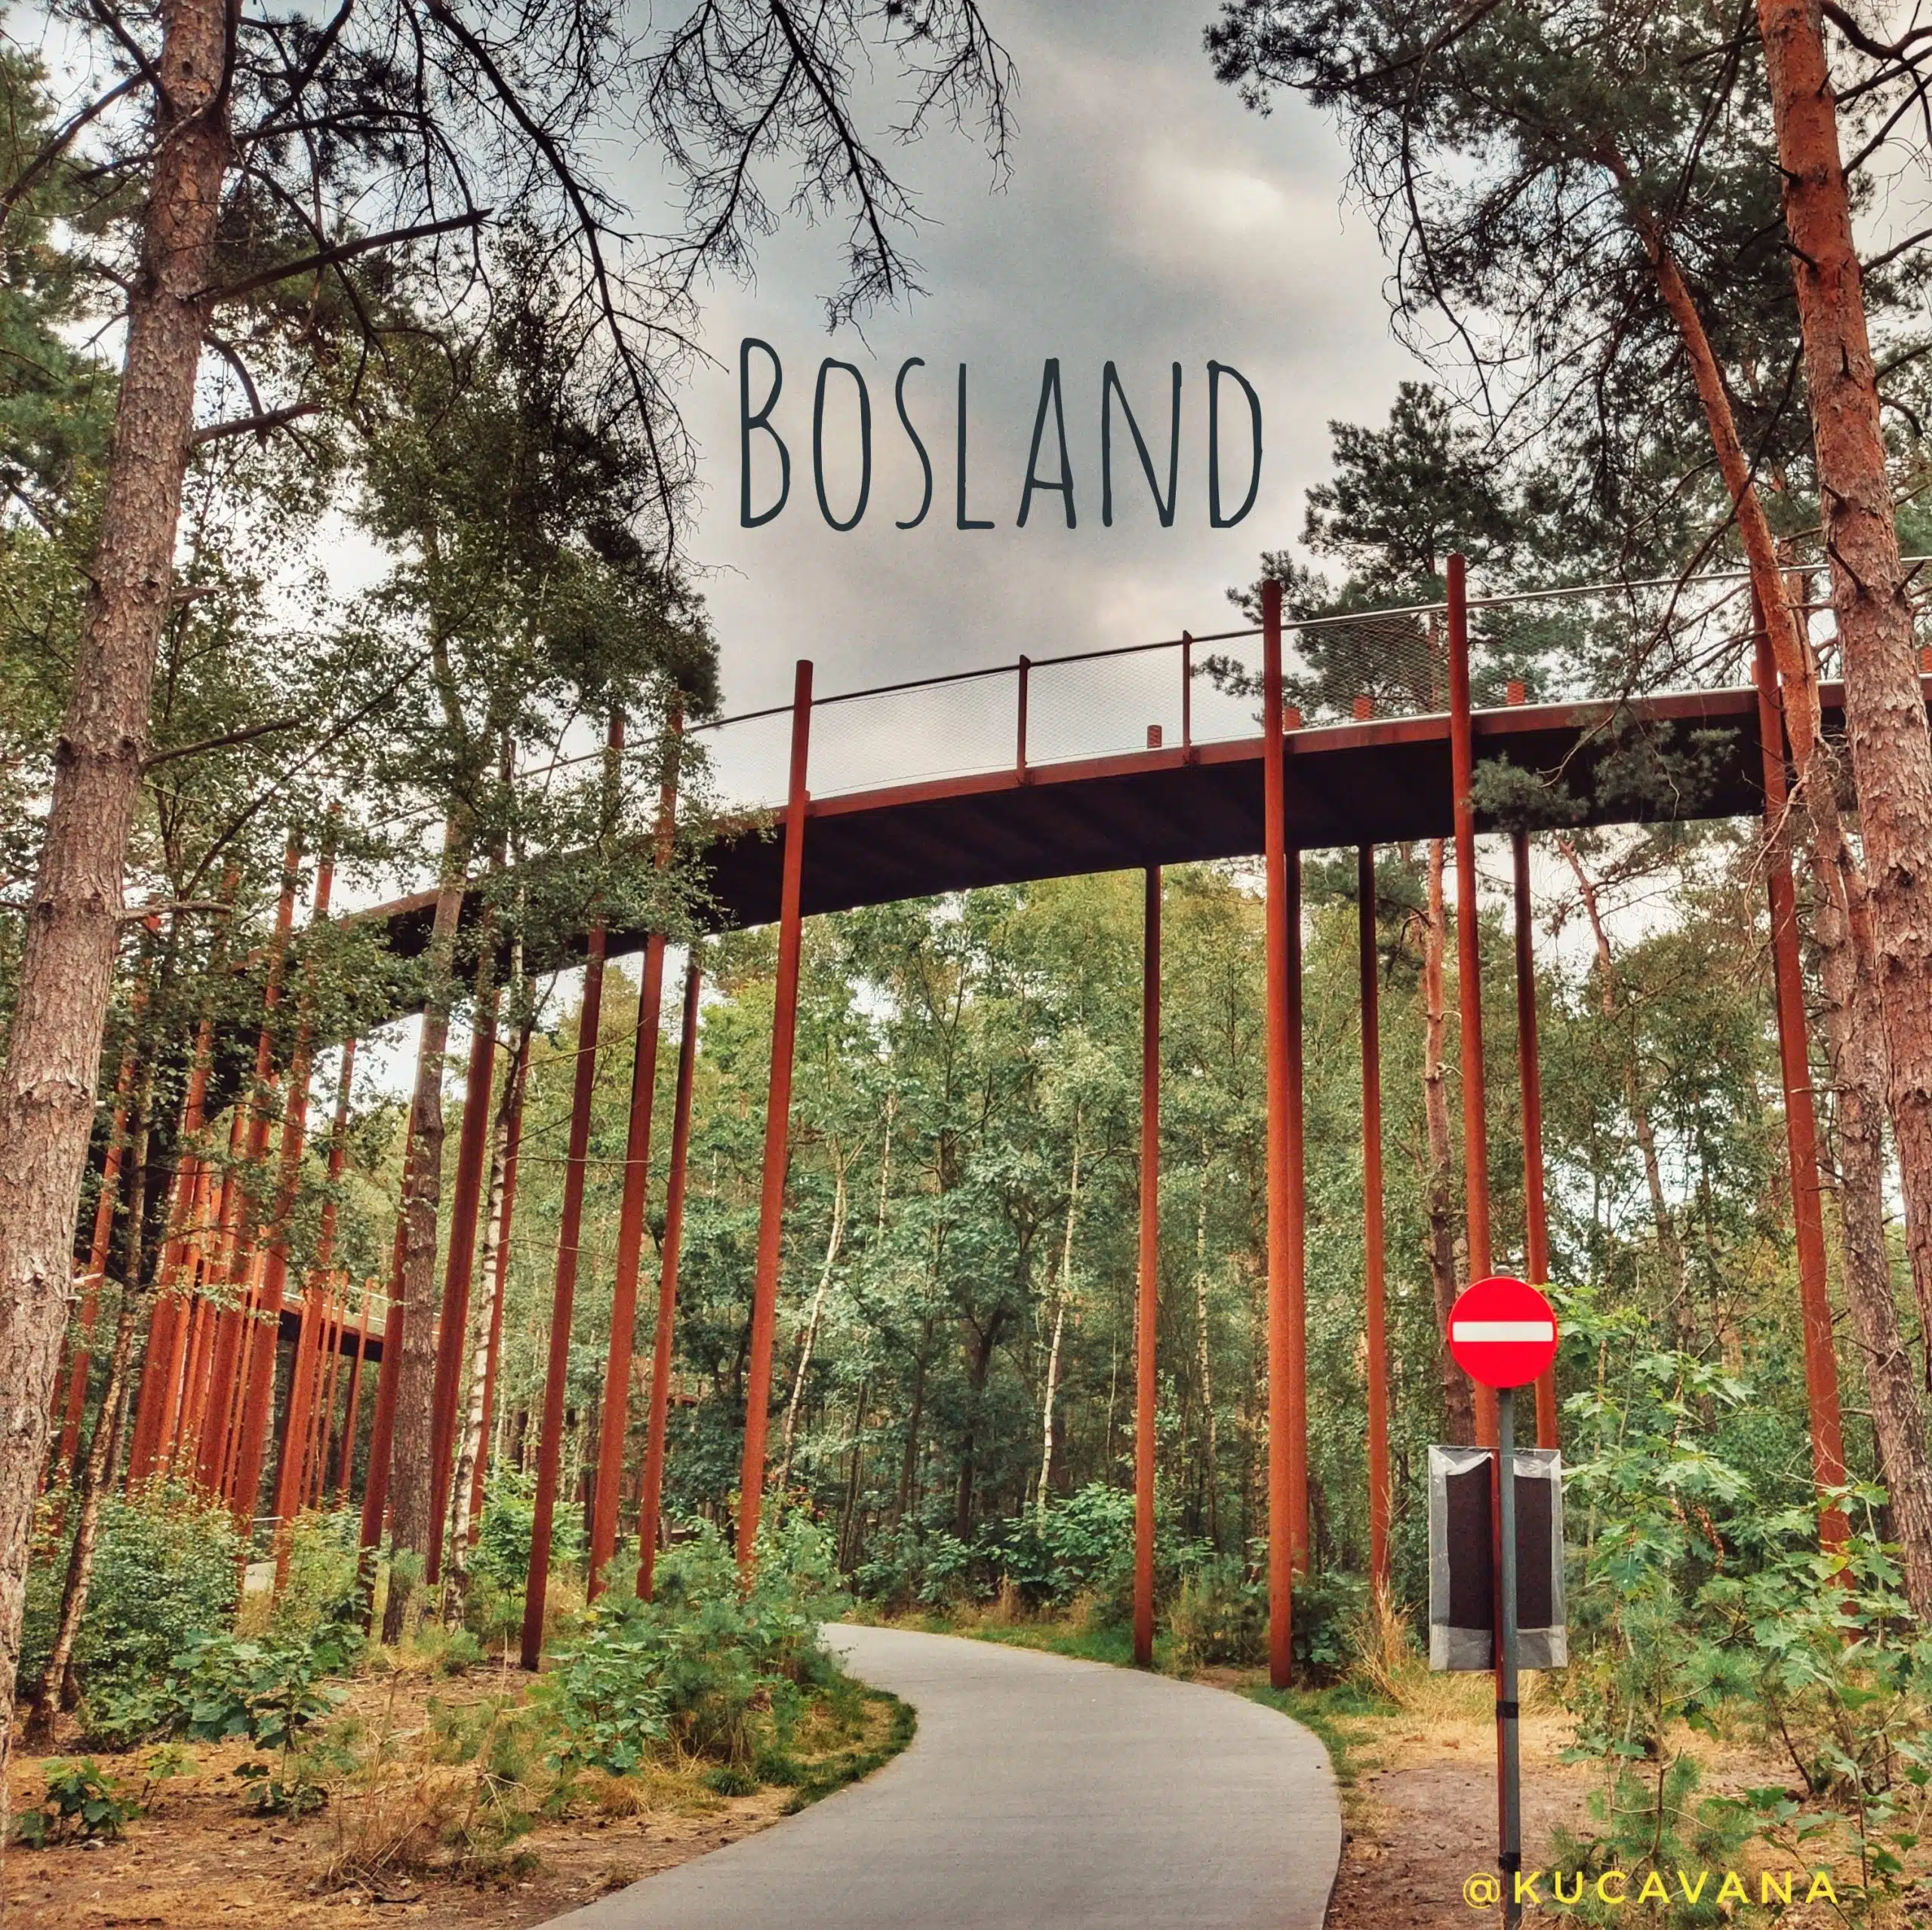 Ciclovia Bosland Limburg acima das árvores